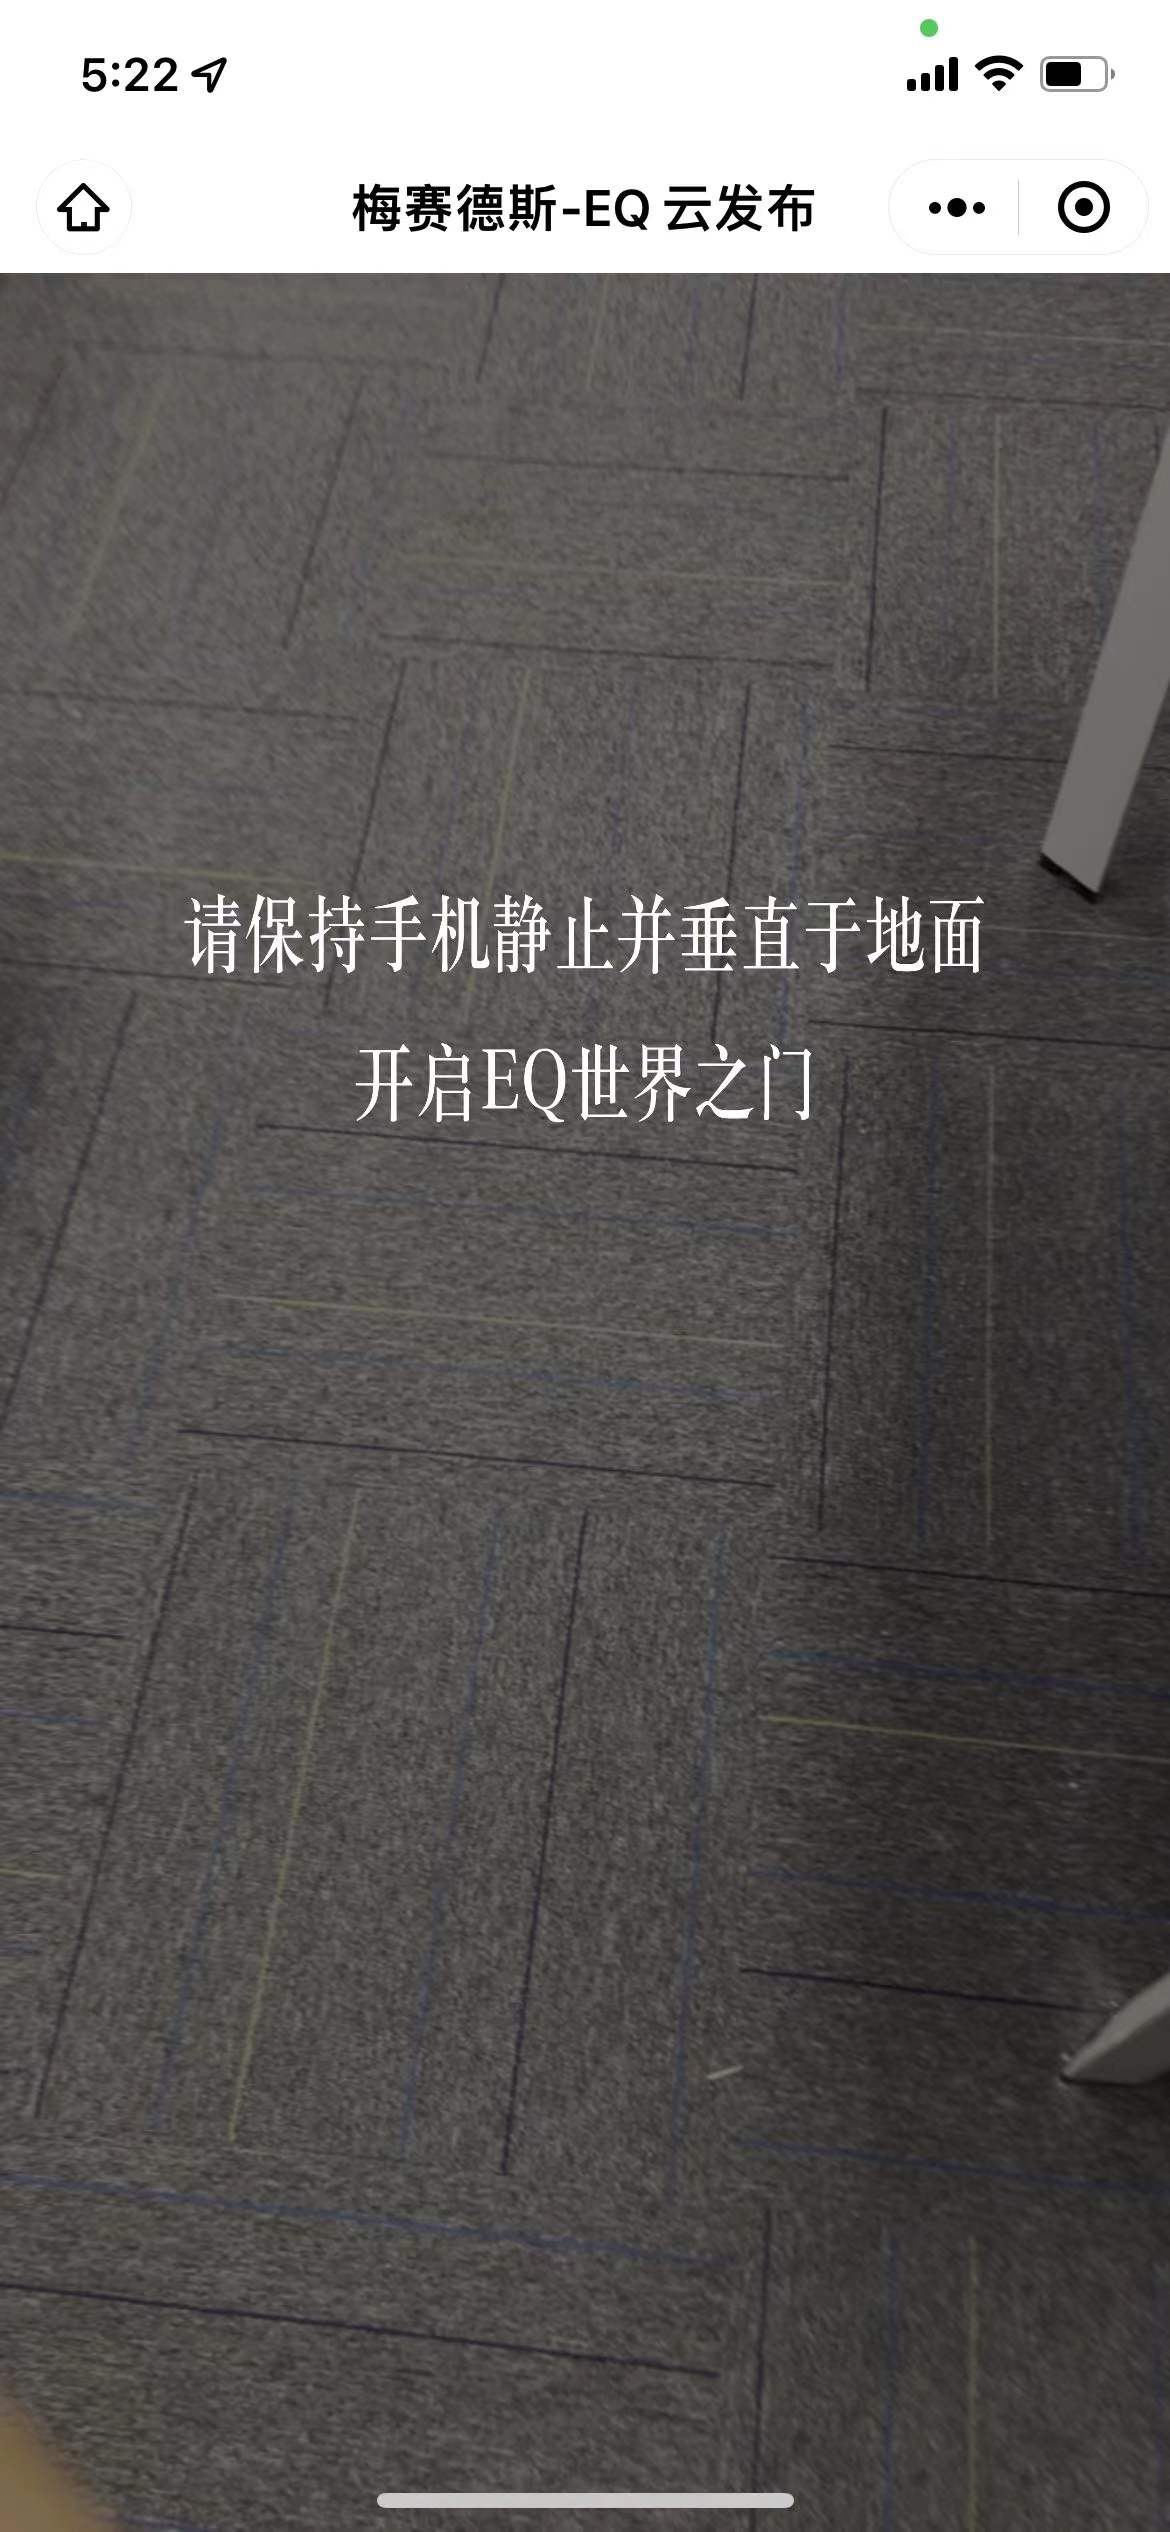 梅赛德斯-EQ云发布邀请函小程序